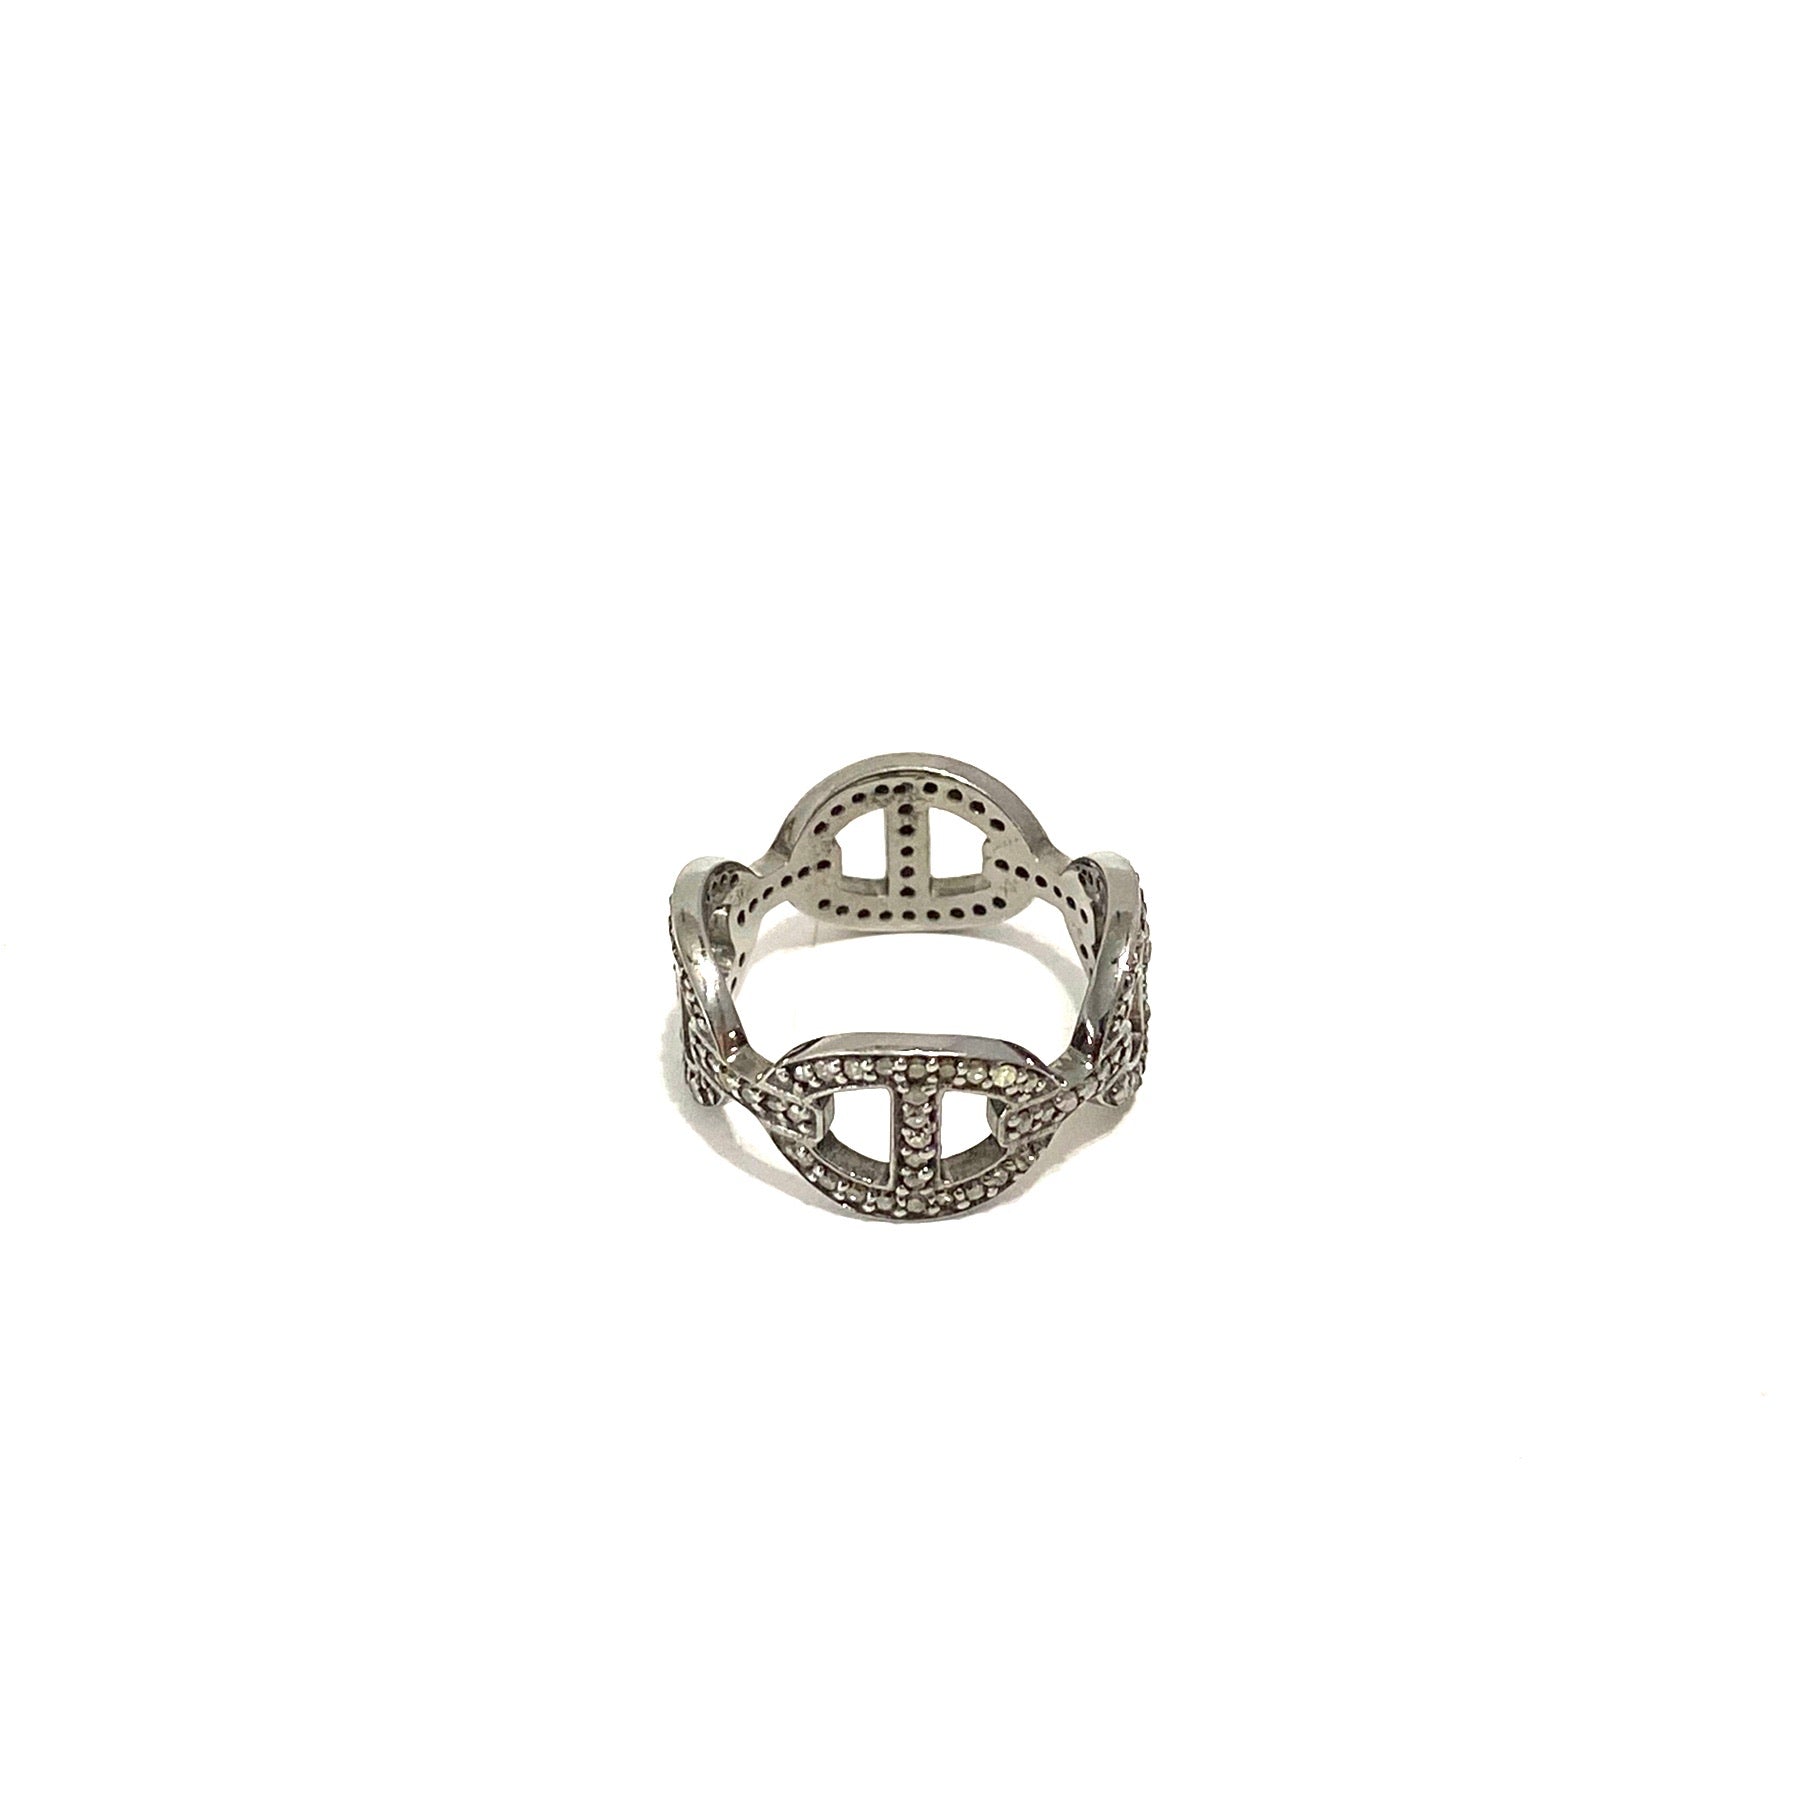 S.Row Designs Pave Diamond Ring